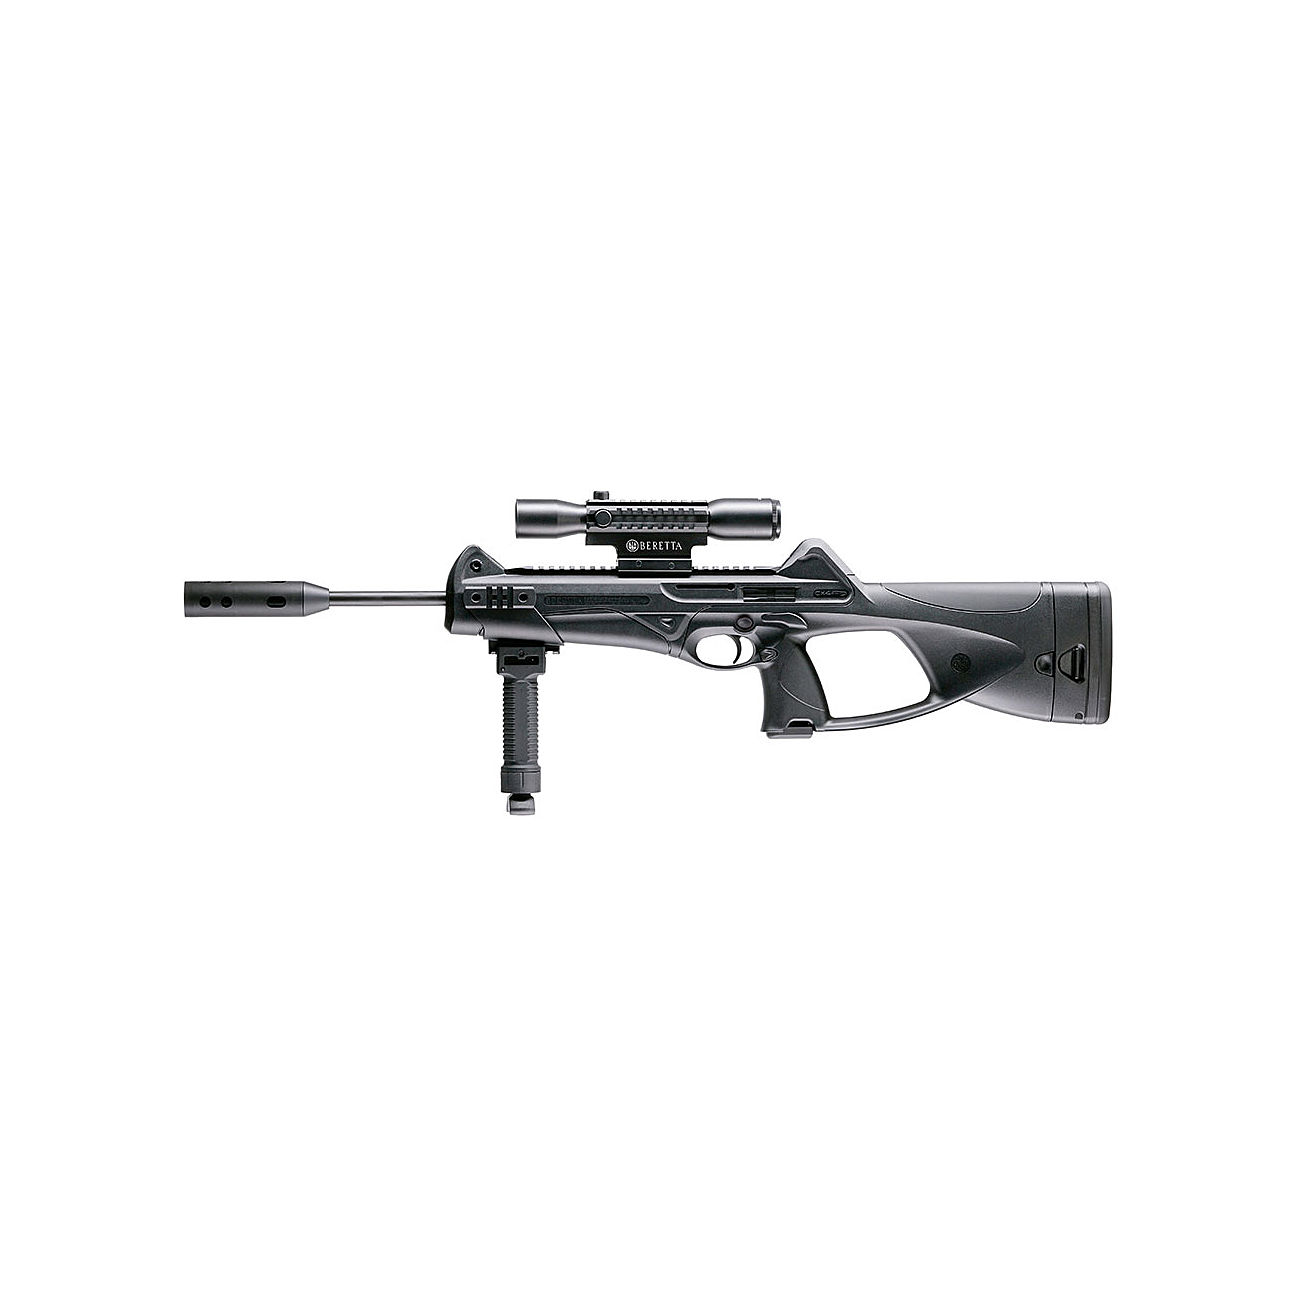 Beretta Cx4 Storm XT CO2 Luftgewehr 4,5 mm Diabolo ink. Zweibein, Zielfernrohr Tri-Tac 4x32, Schalldmpfer Bild 2